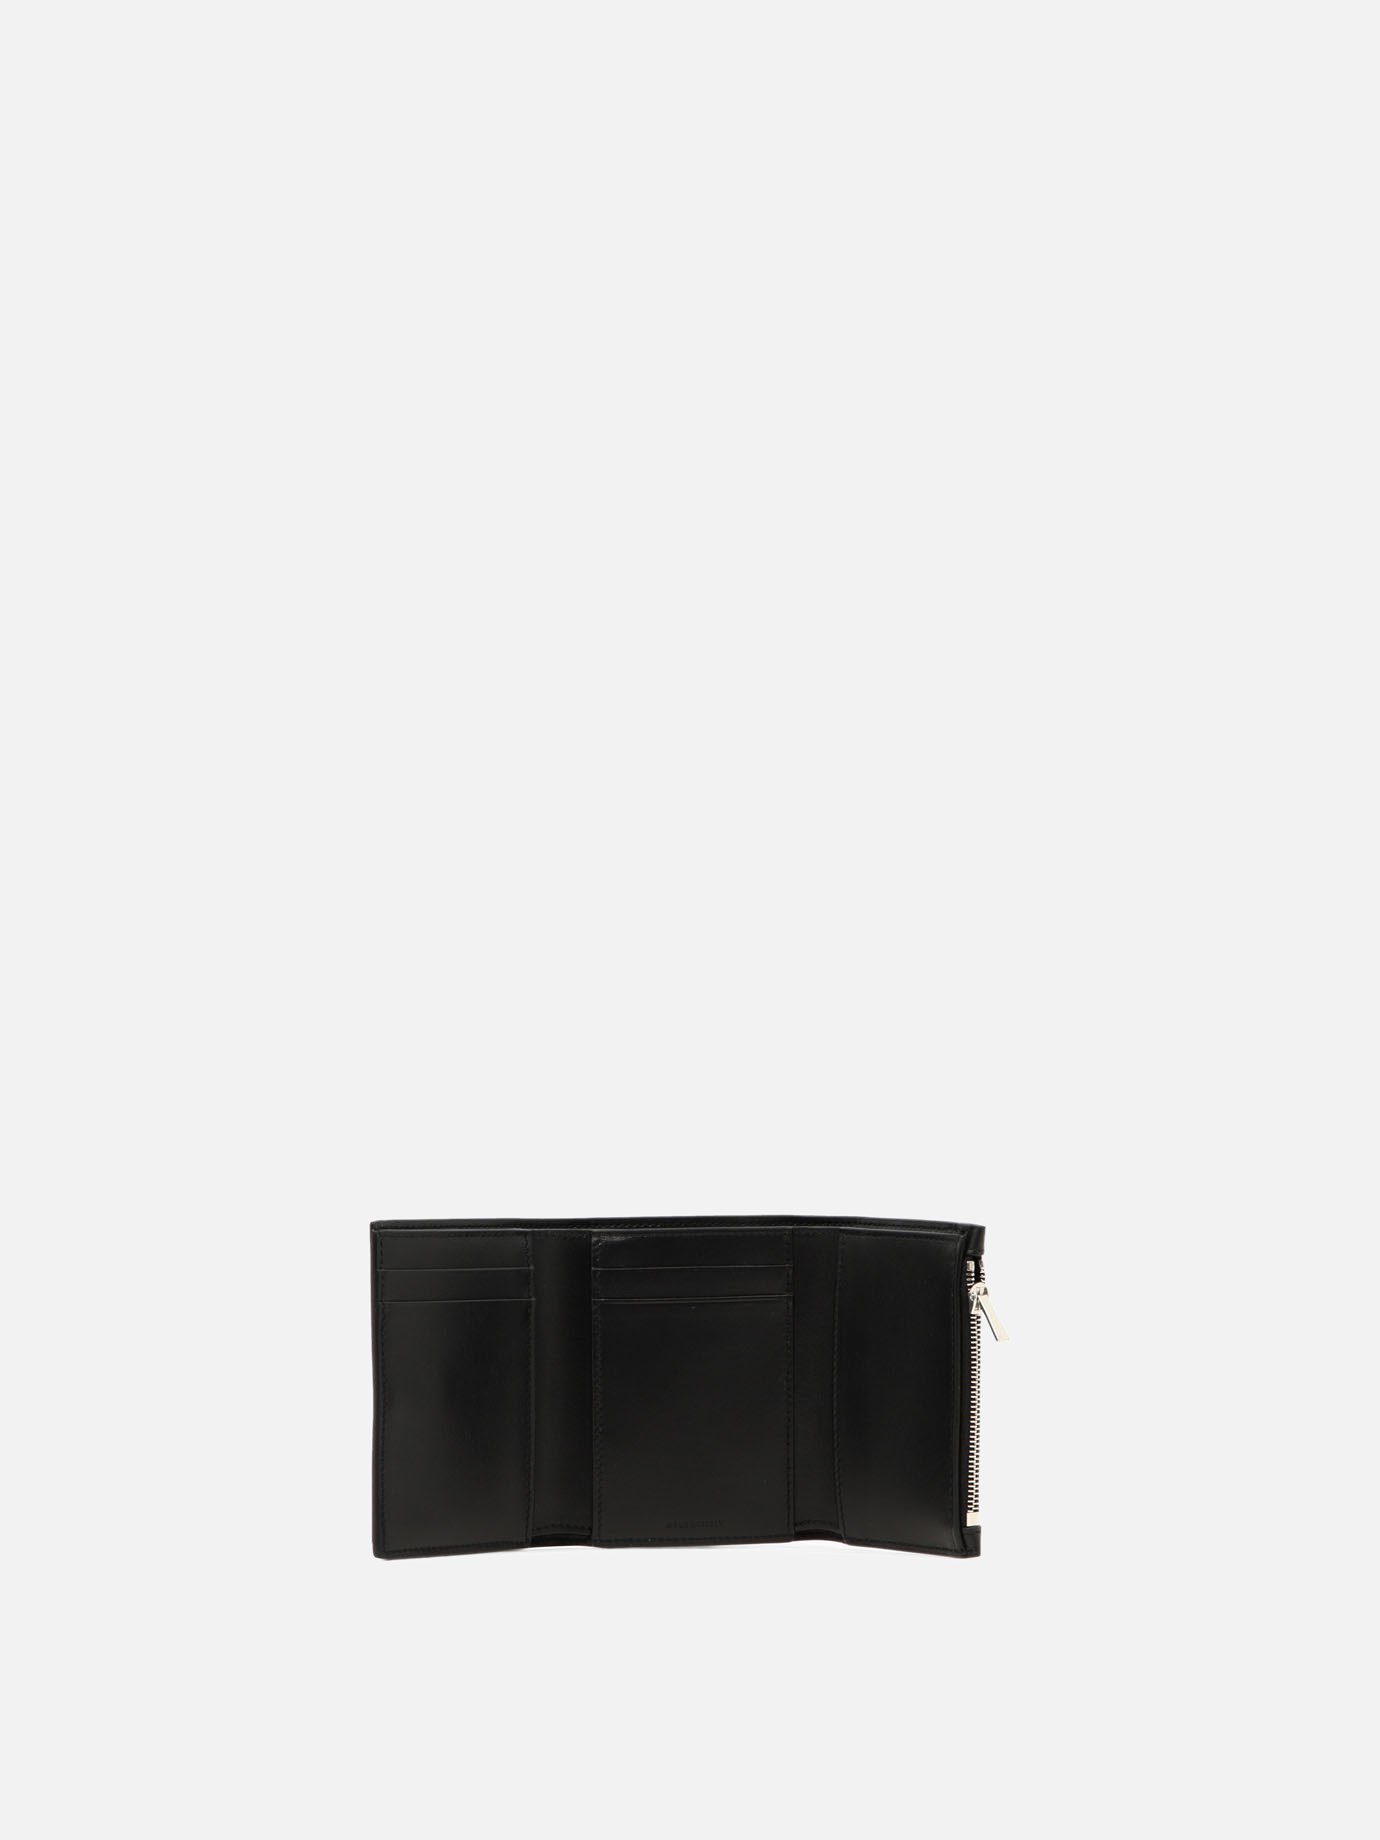  Fine Strap  wallet by Celine